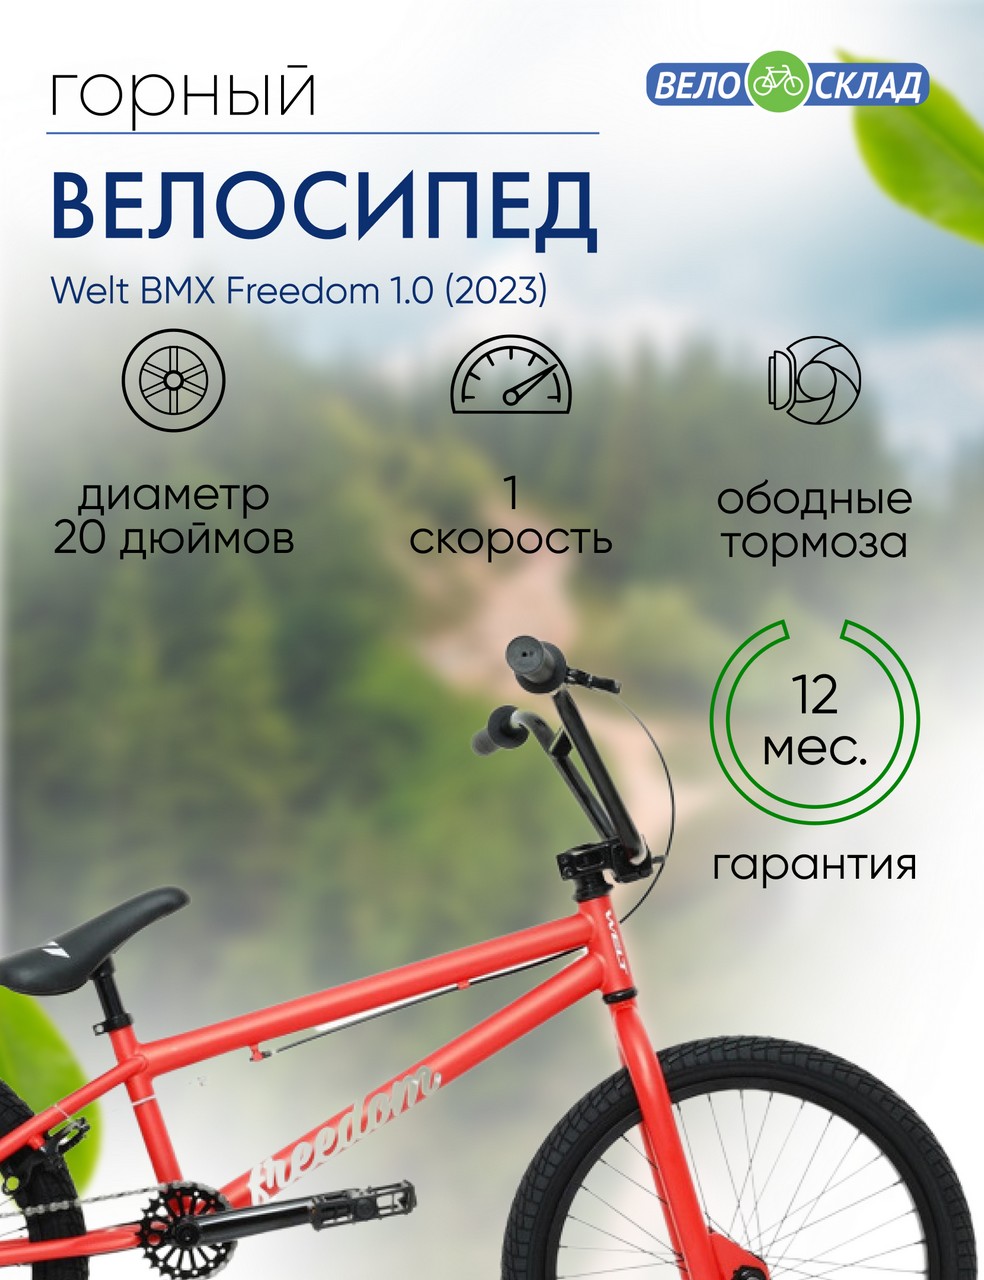 Экстремальный велосипед Welt BMX Freedom 1.0, год 2023, цвет Красный, ростовка 20.5